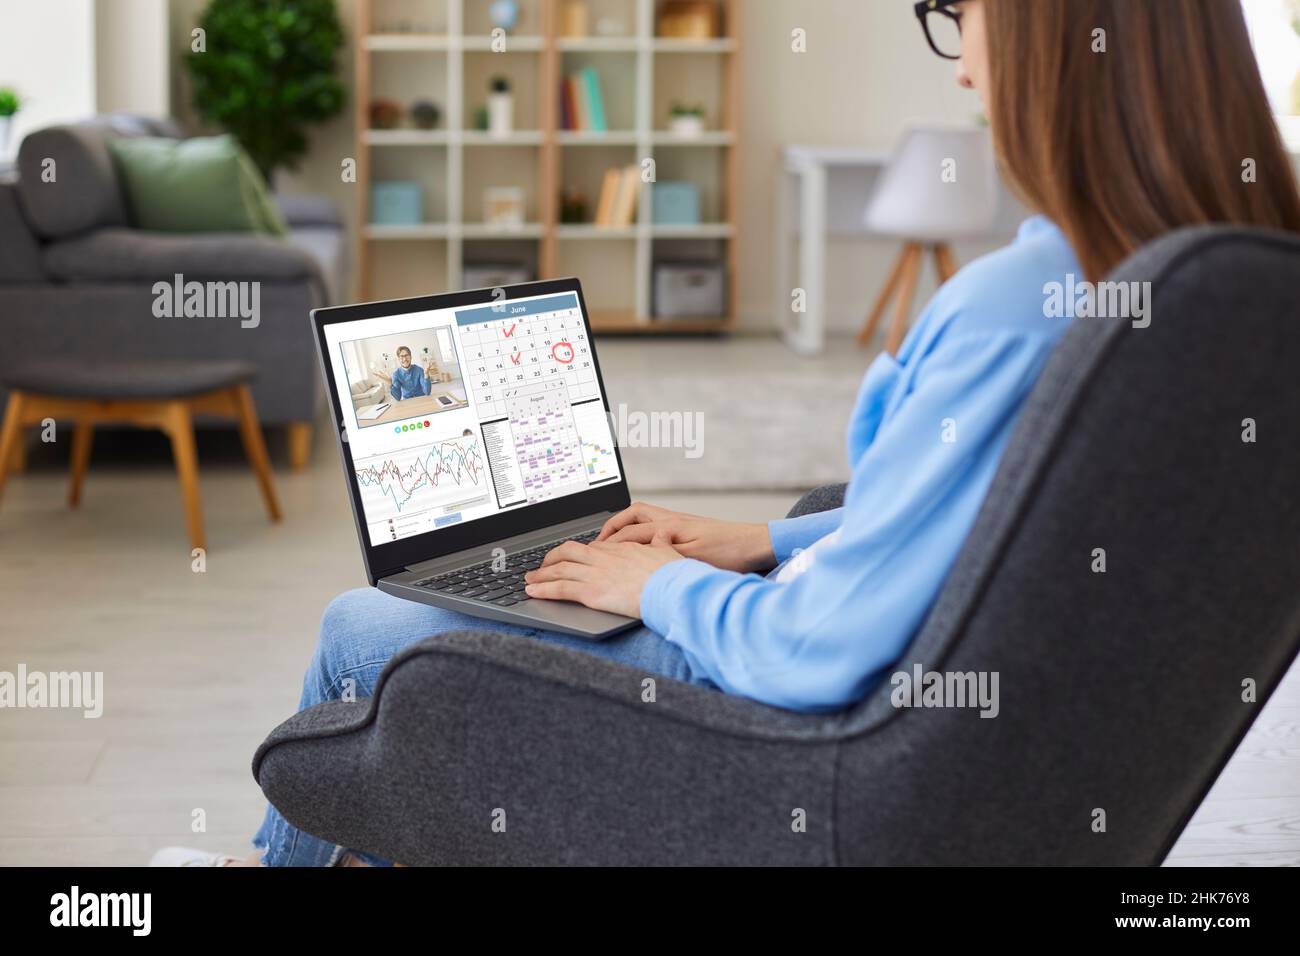 Femme assise à la maison, travaillant sur un ordinateur portable, utilisant le calendrier et ayant des appels vidéo Banque D'Images